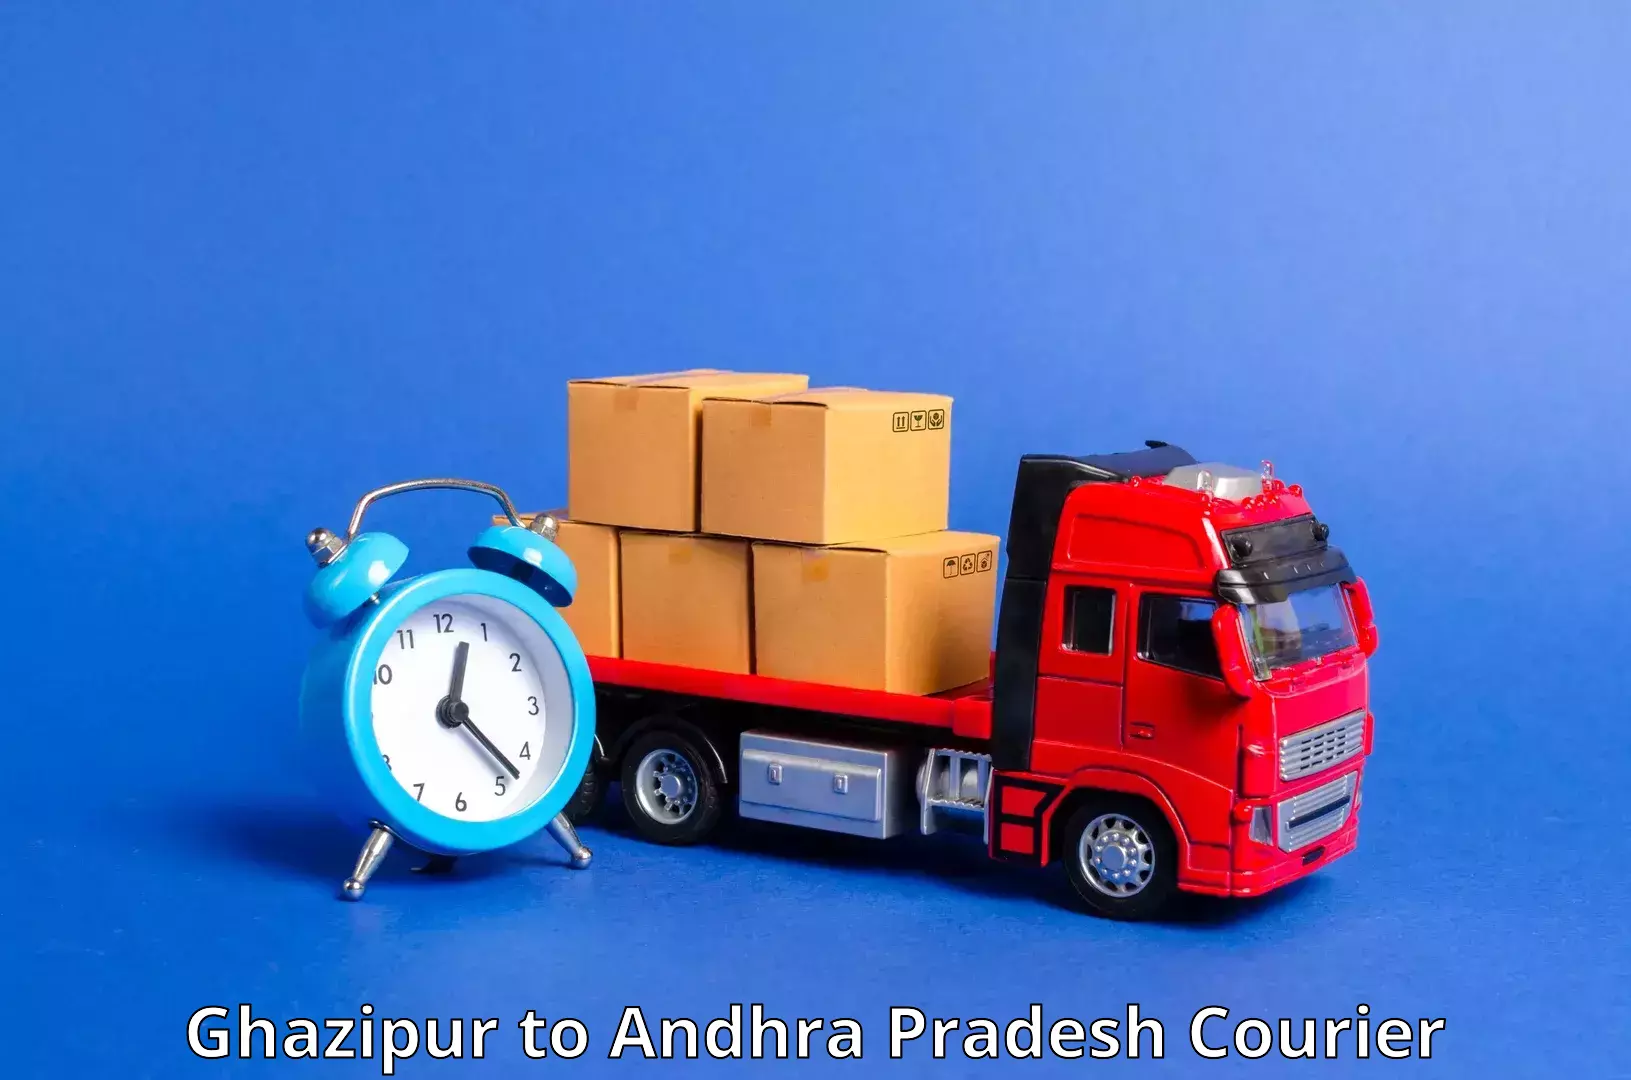 High-speed parcel service Ghazipur to Amarapuram